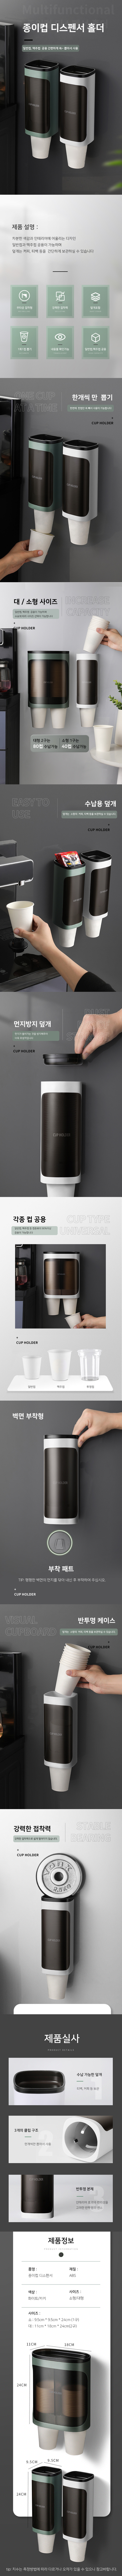 Paper cup dispenser.jpg